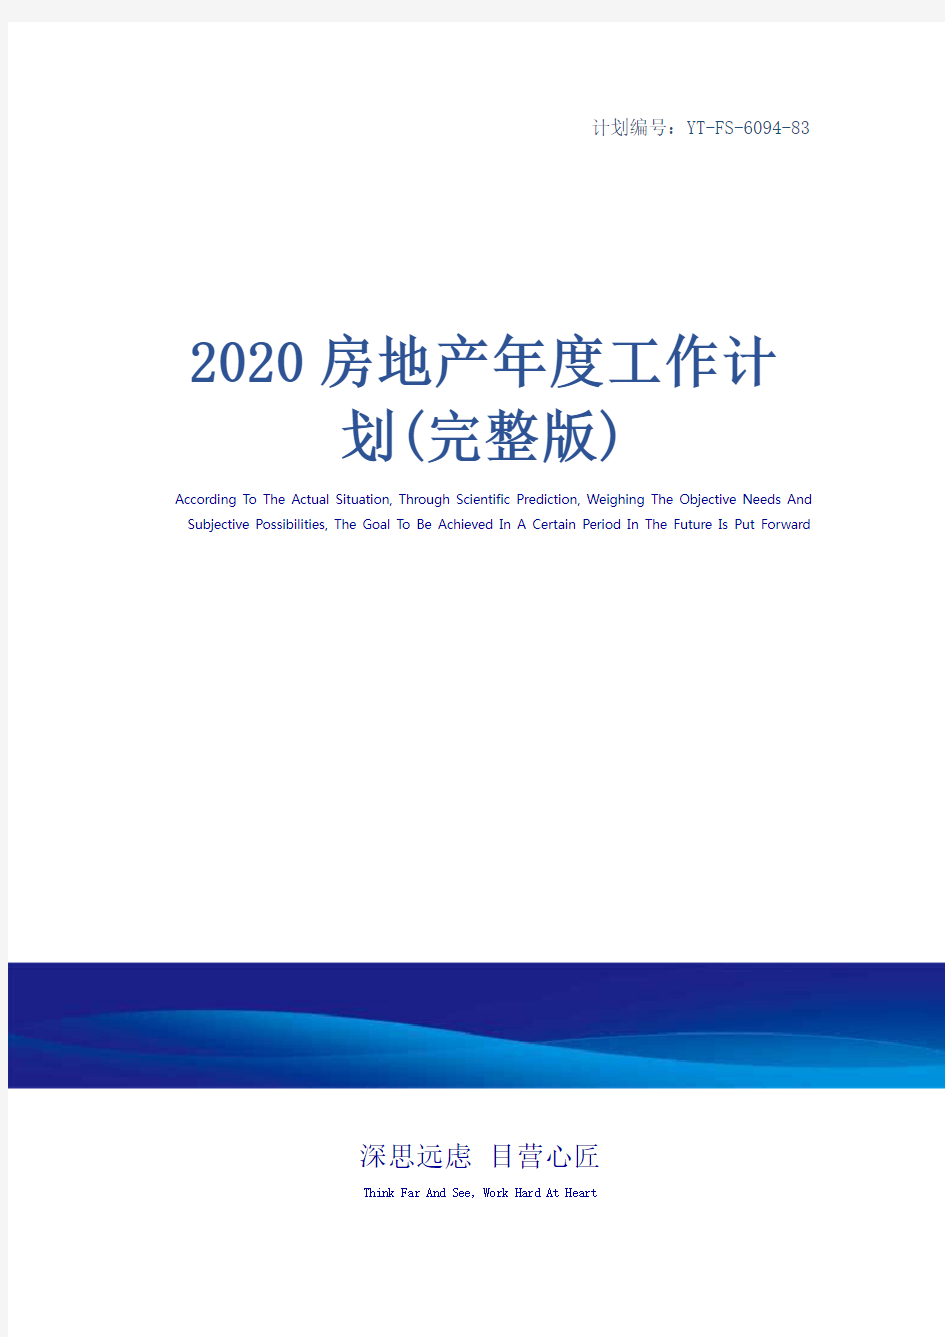 2020房地产年度工作计划(完整版)